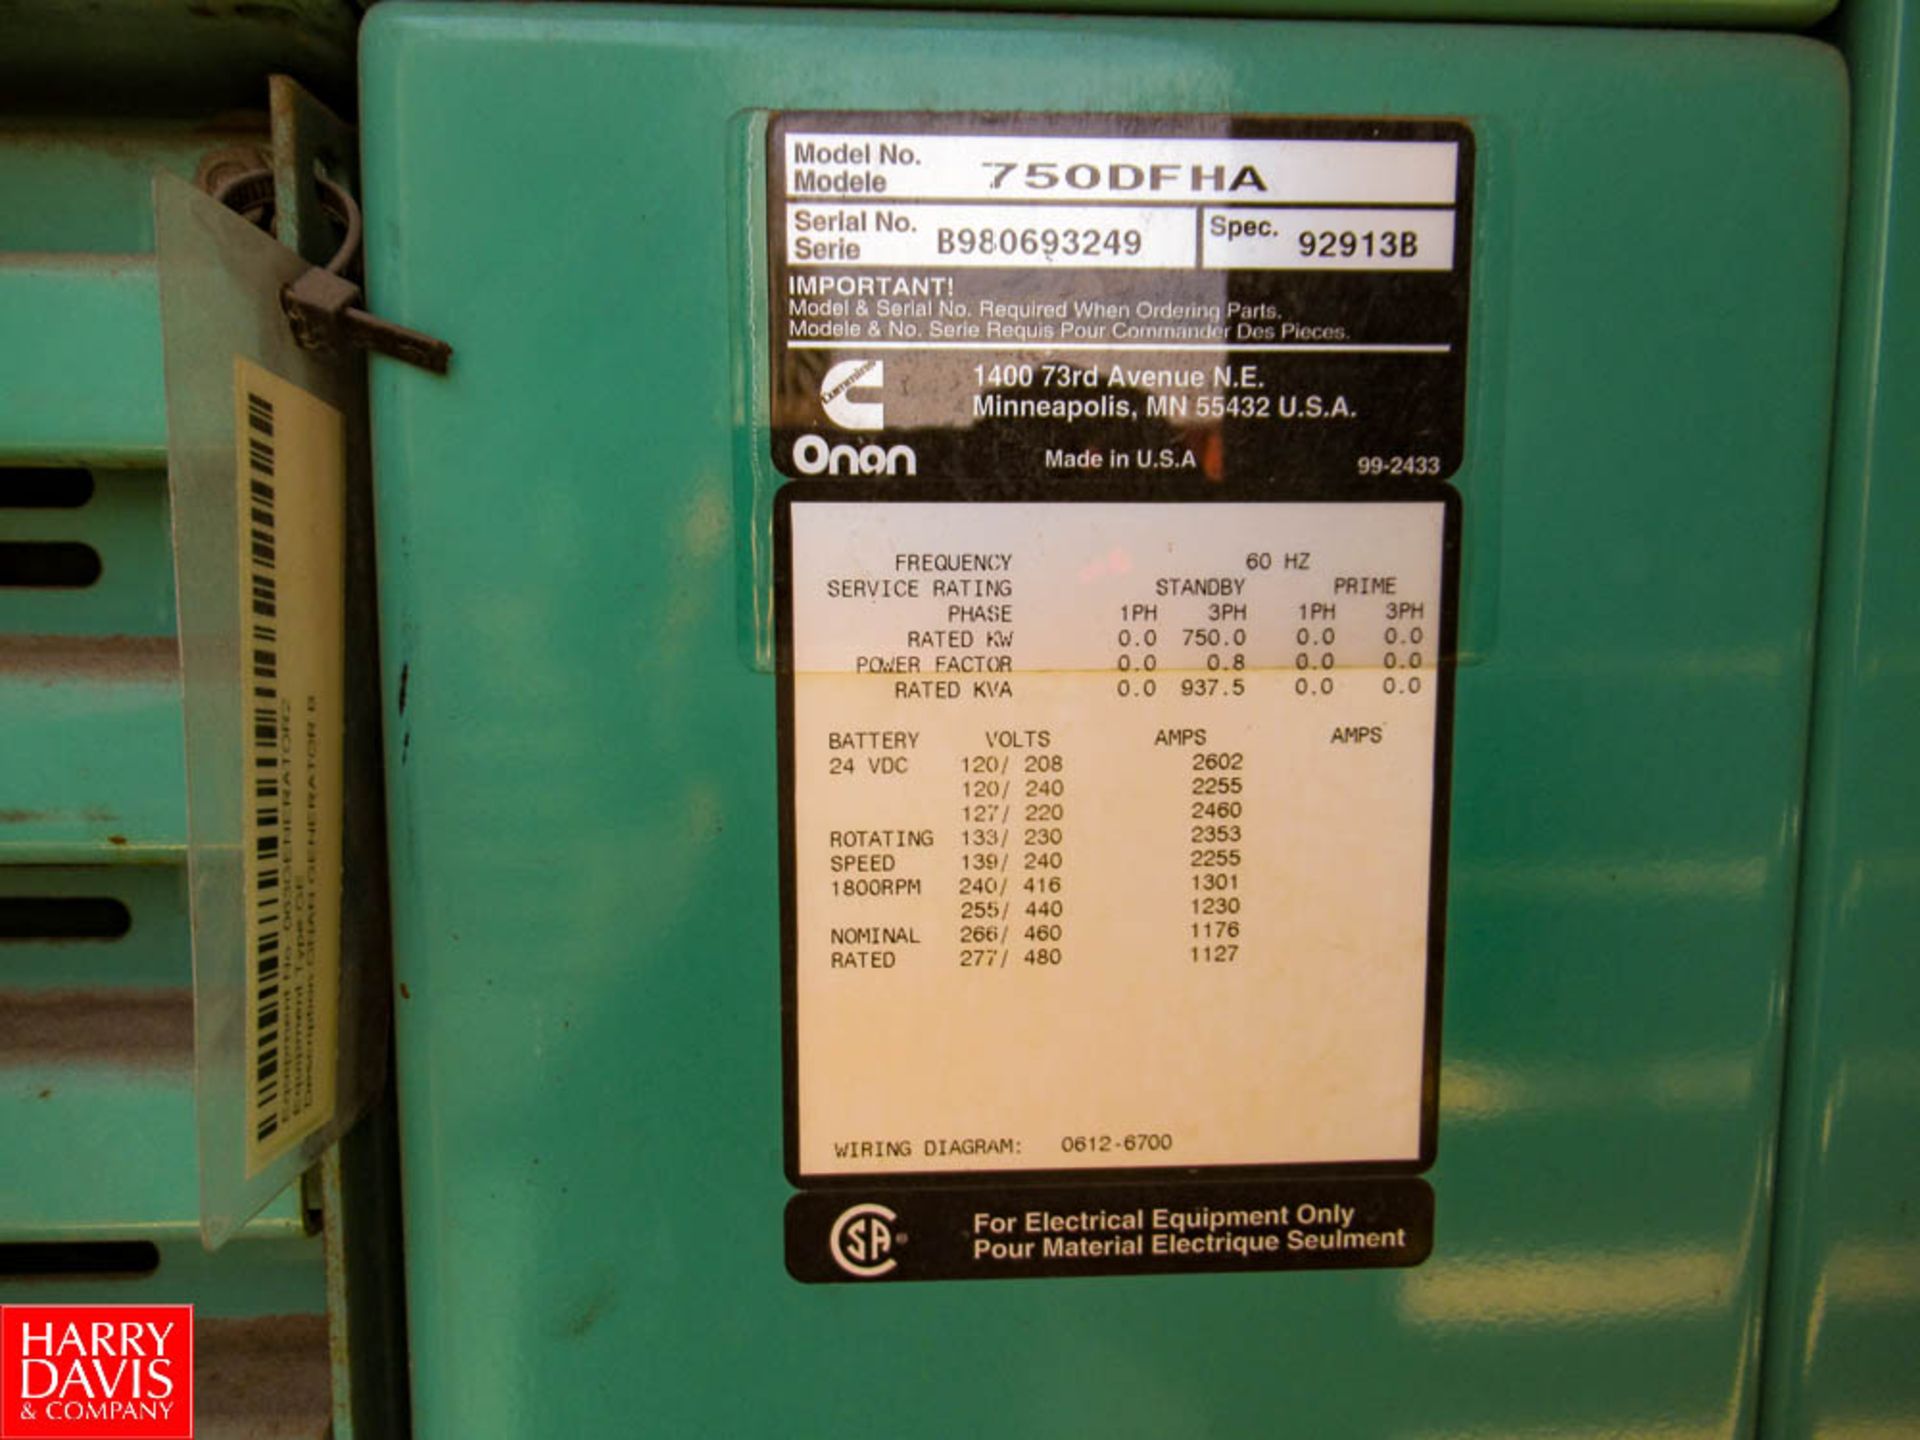 Onan Cummins 750-Kw Diesel Gen Set, Model: 750DFHA SN: B980693249, Located: Outside of Boiler Rm - - Image 4 of 4